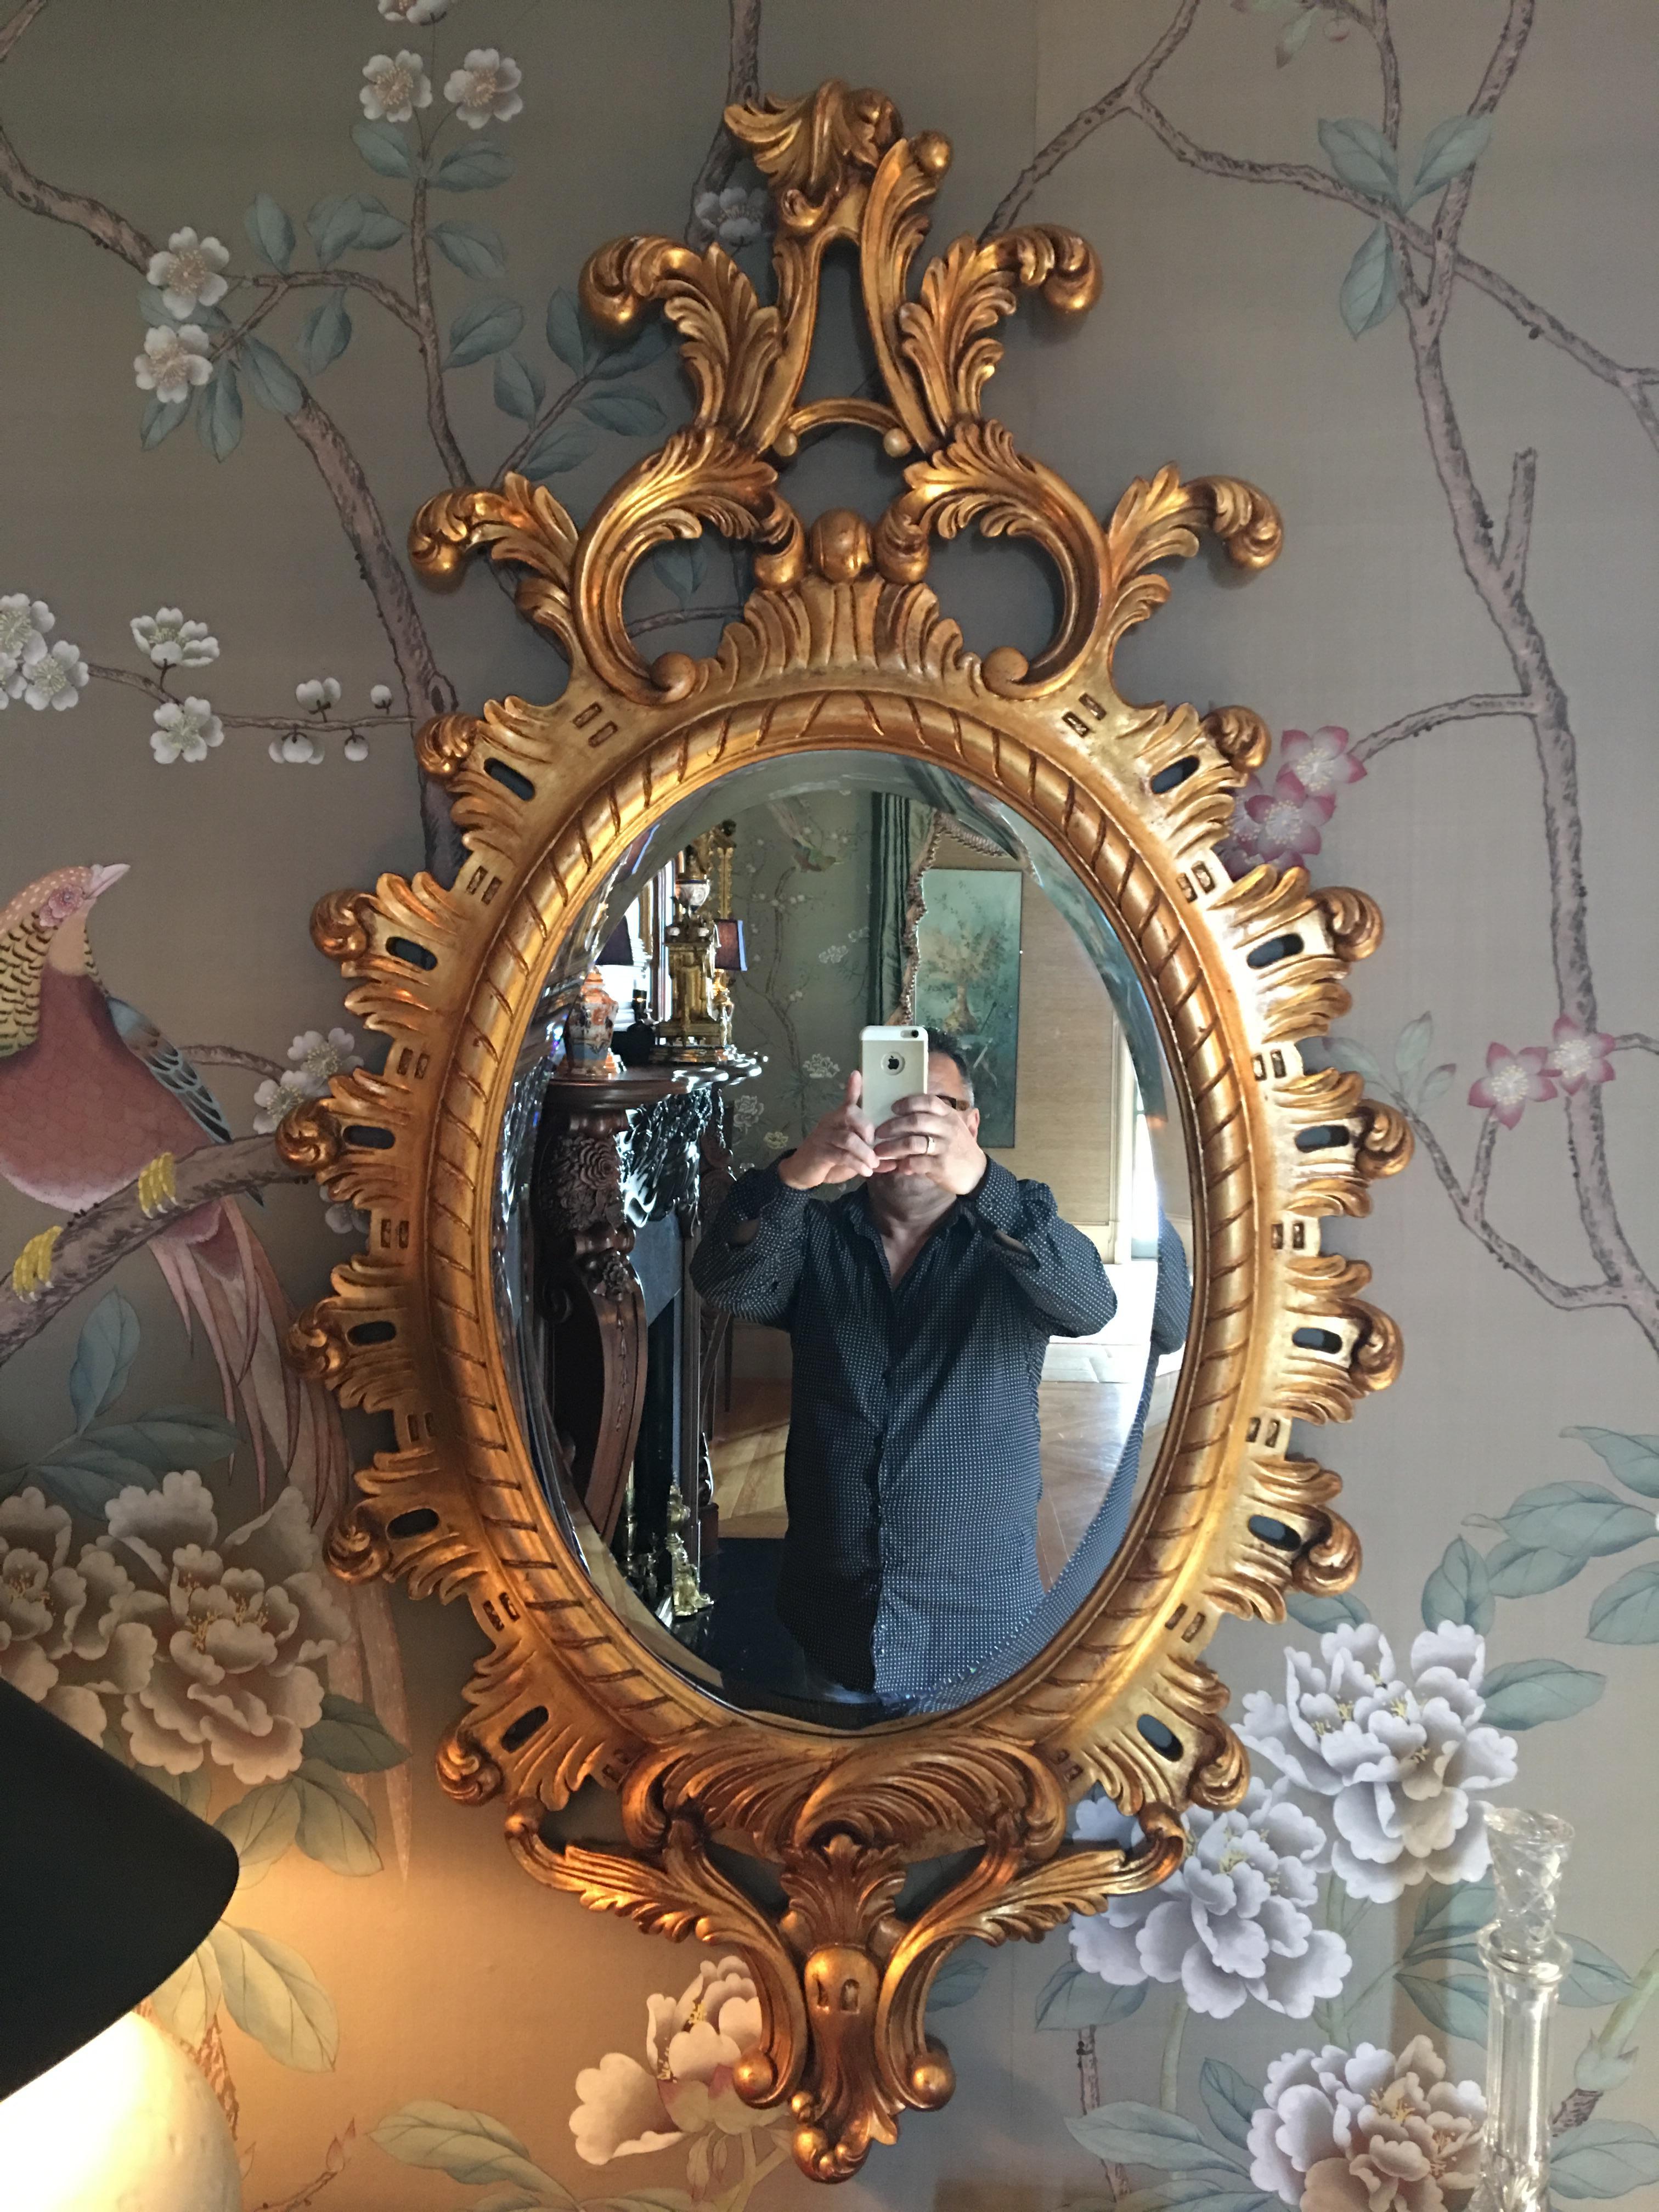 giltwood-Spiegel aus dem 20. Jahrhundert mit einer Prince-of-Wales-Feder.
       